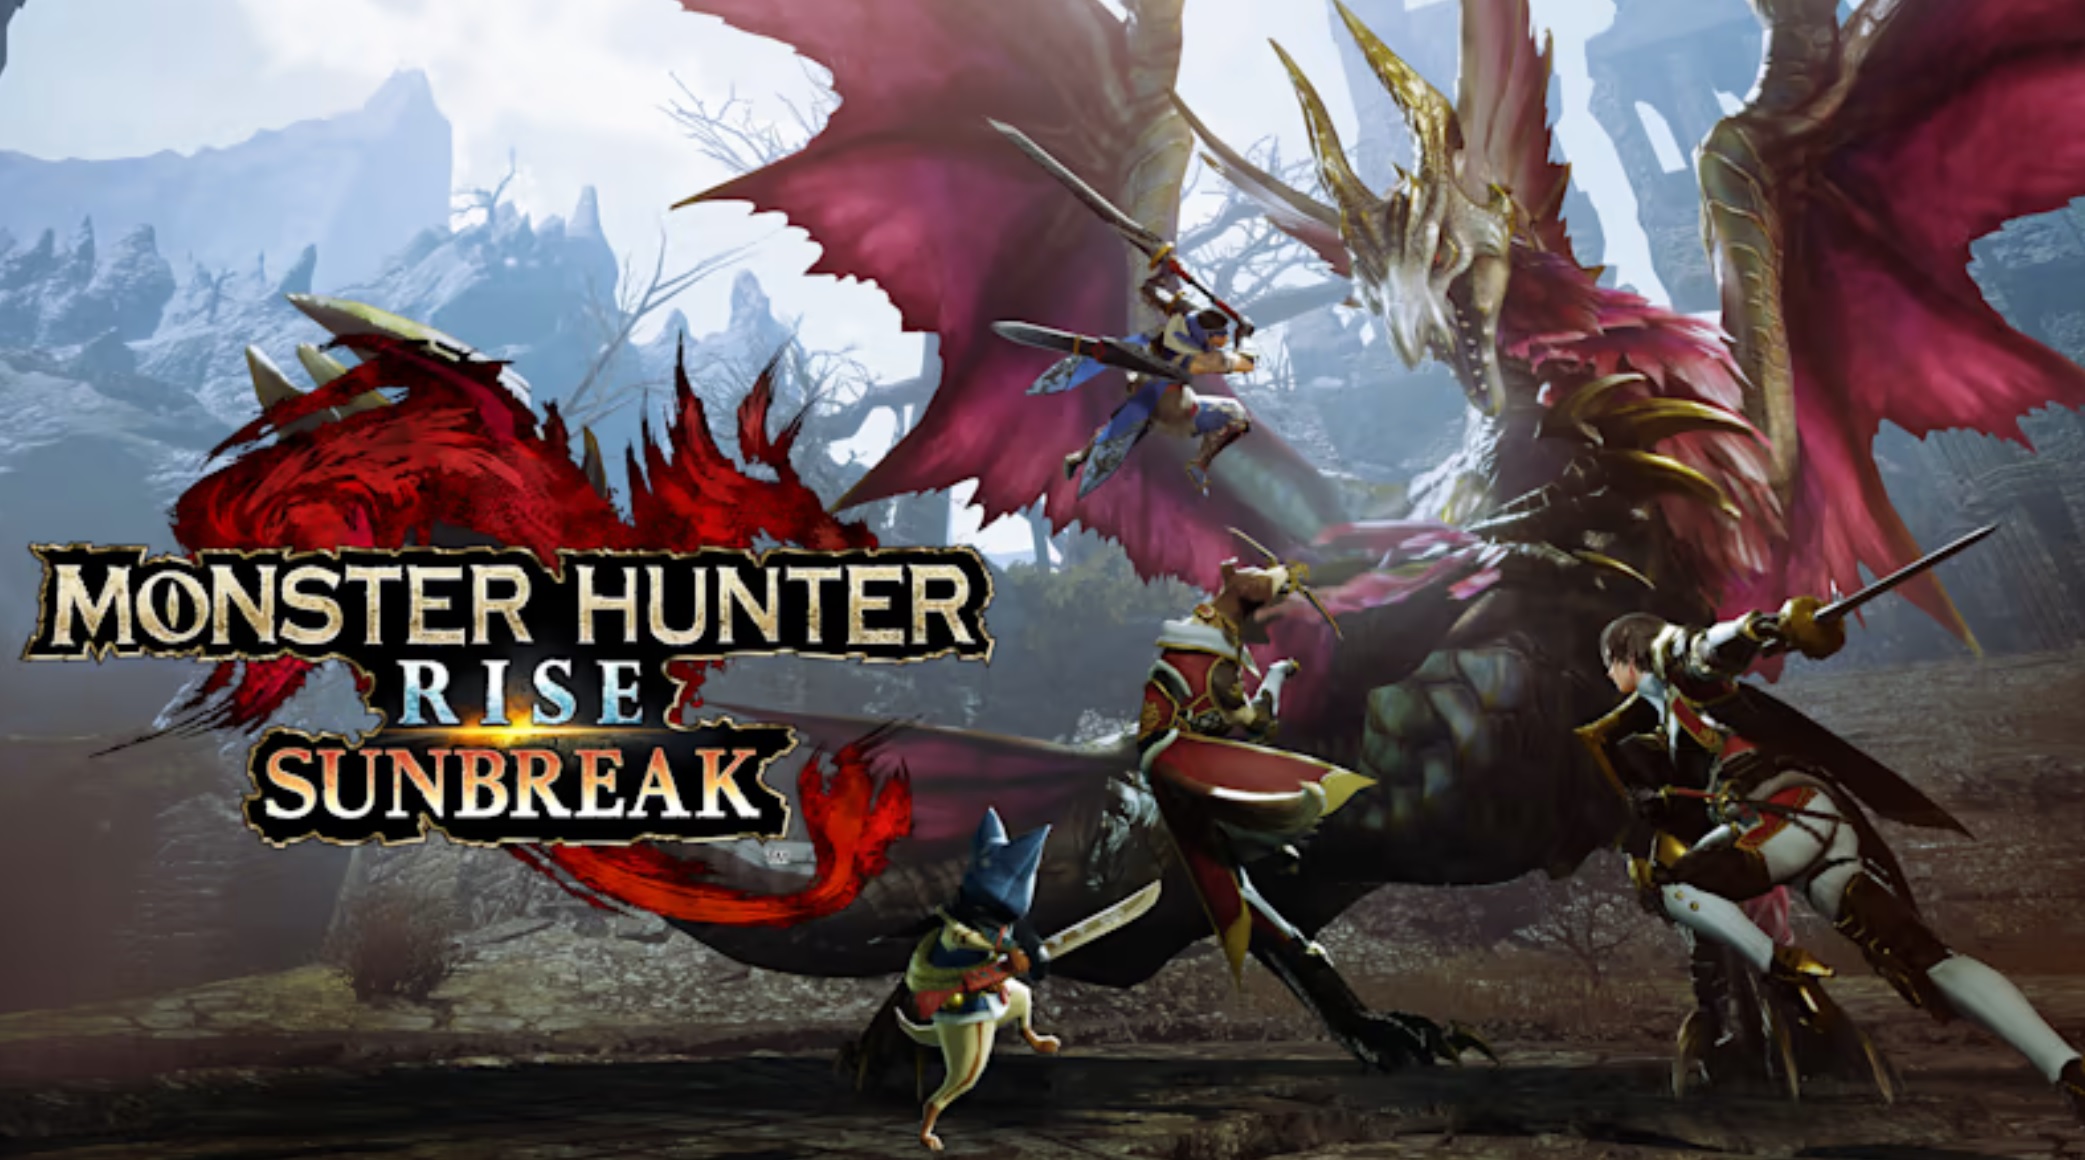 Monster Hunter Rise: Sunbreak Digital Event